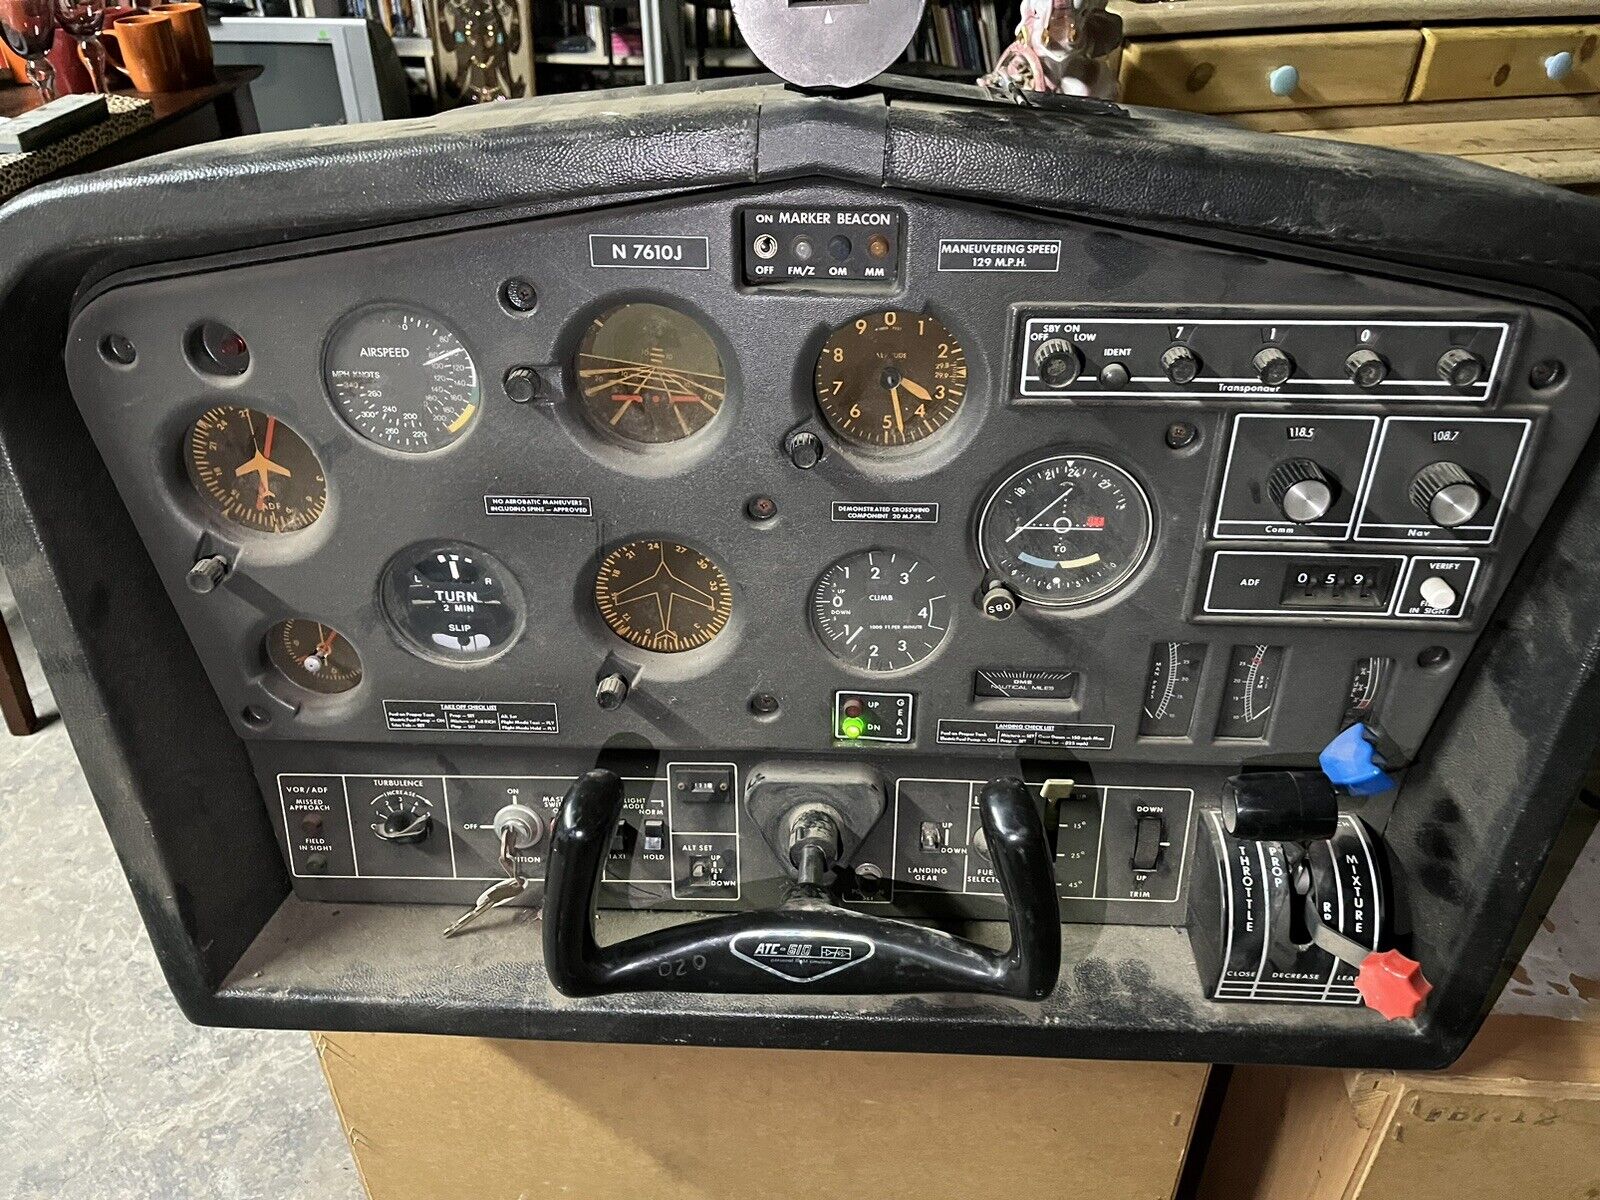 ATC 610 Flight Simulator